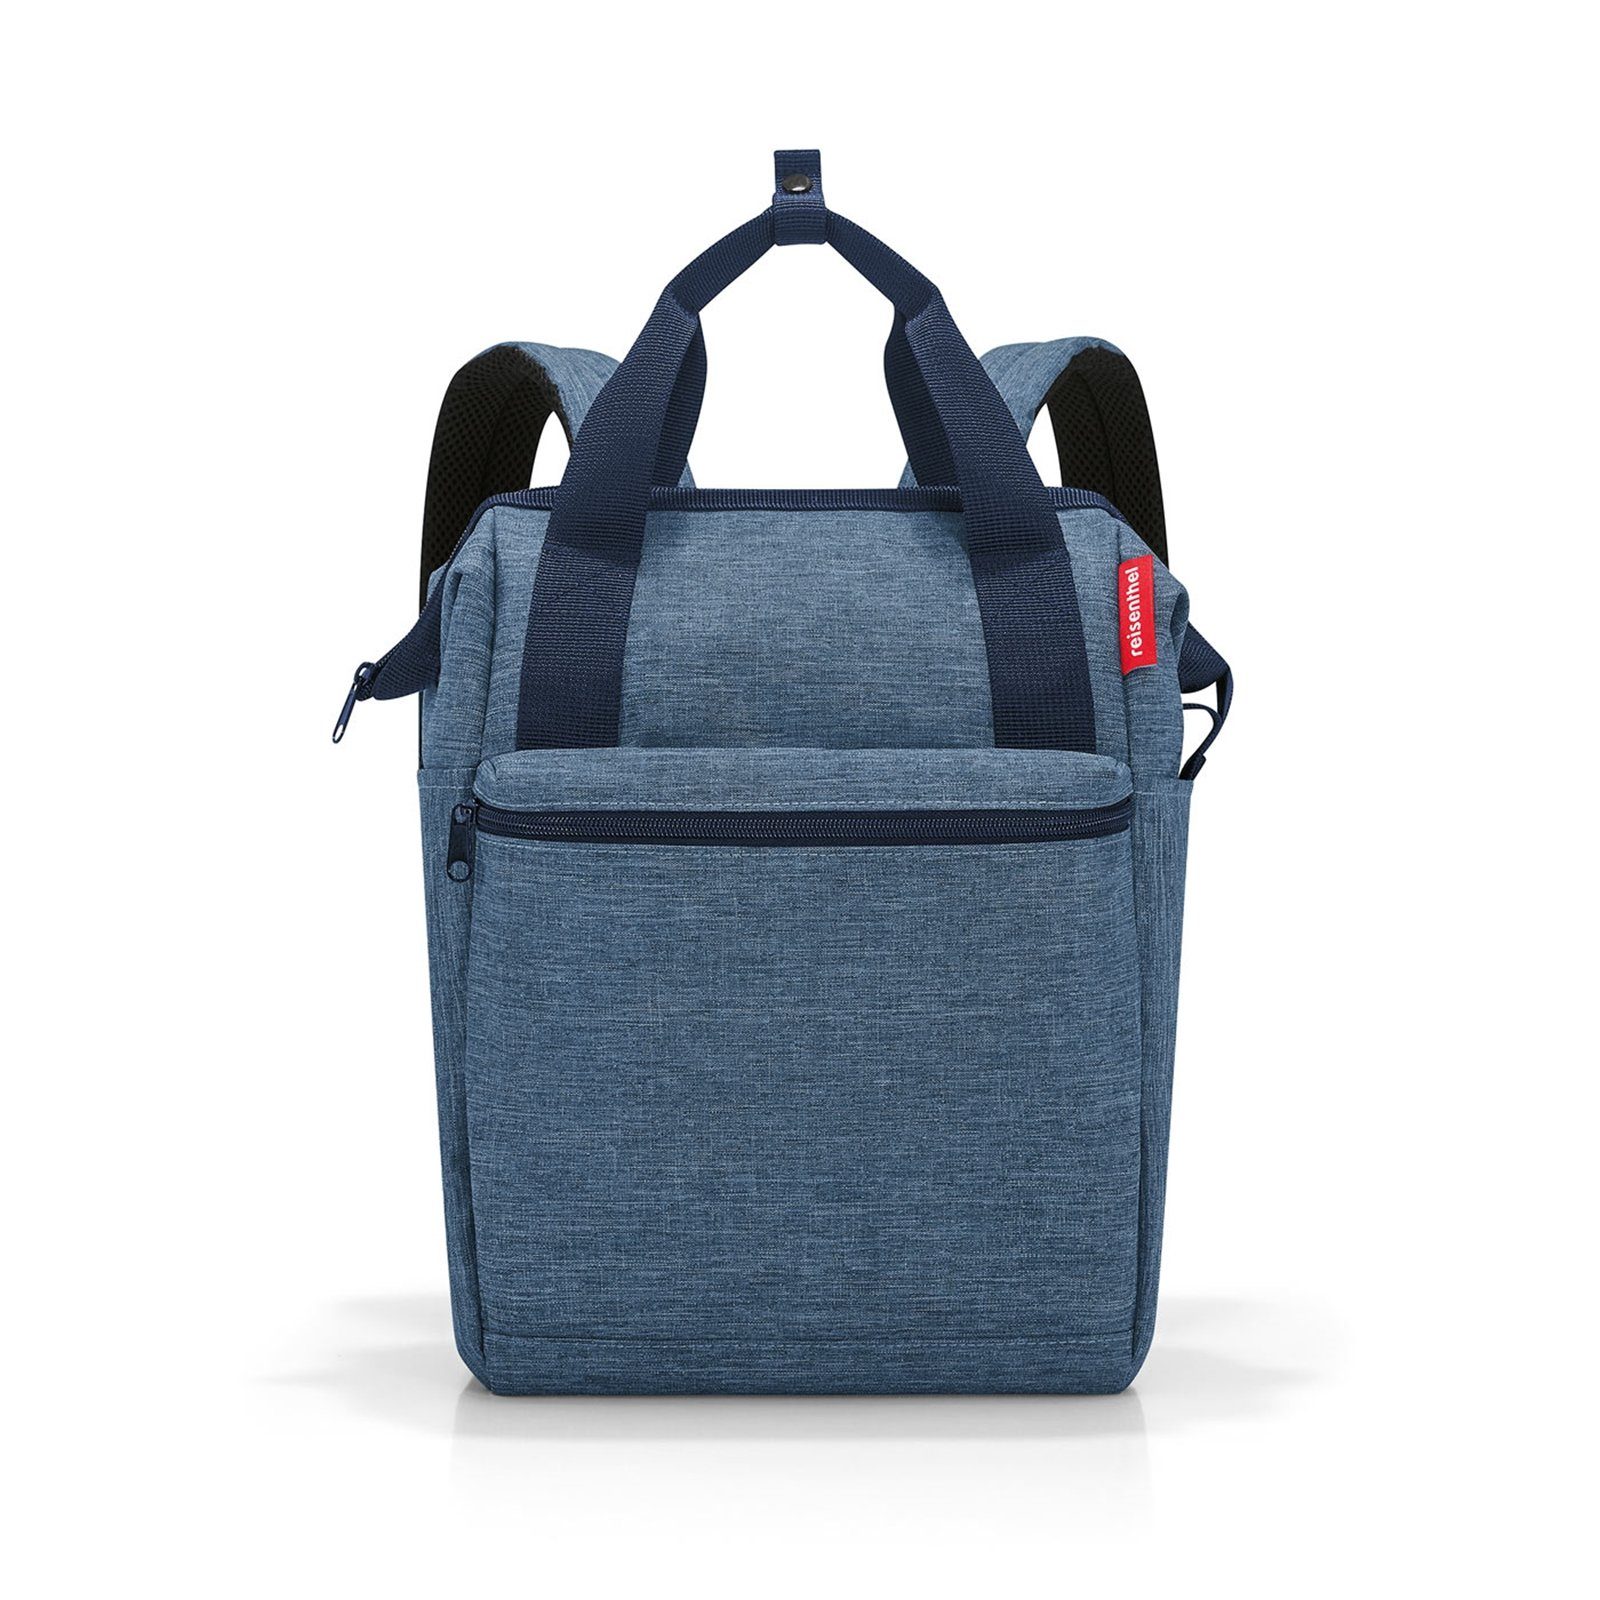 REISENTHEL® Reisetasche Handtasche allrounder R twist blue